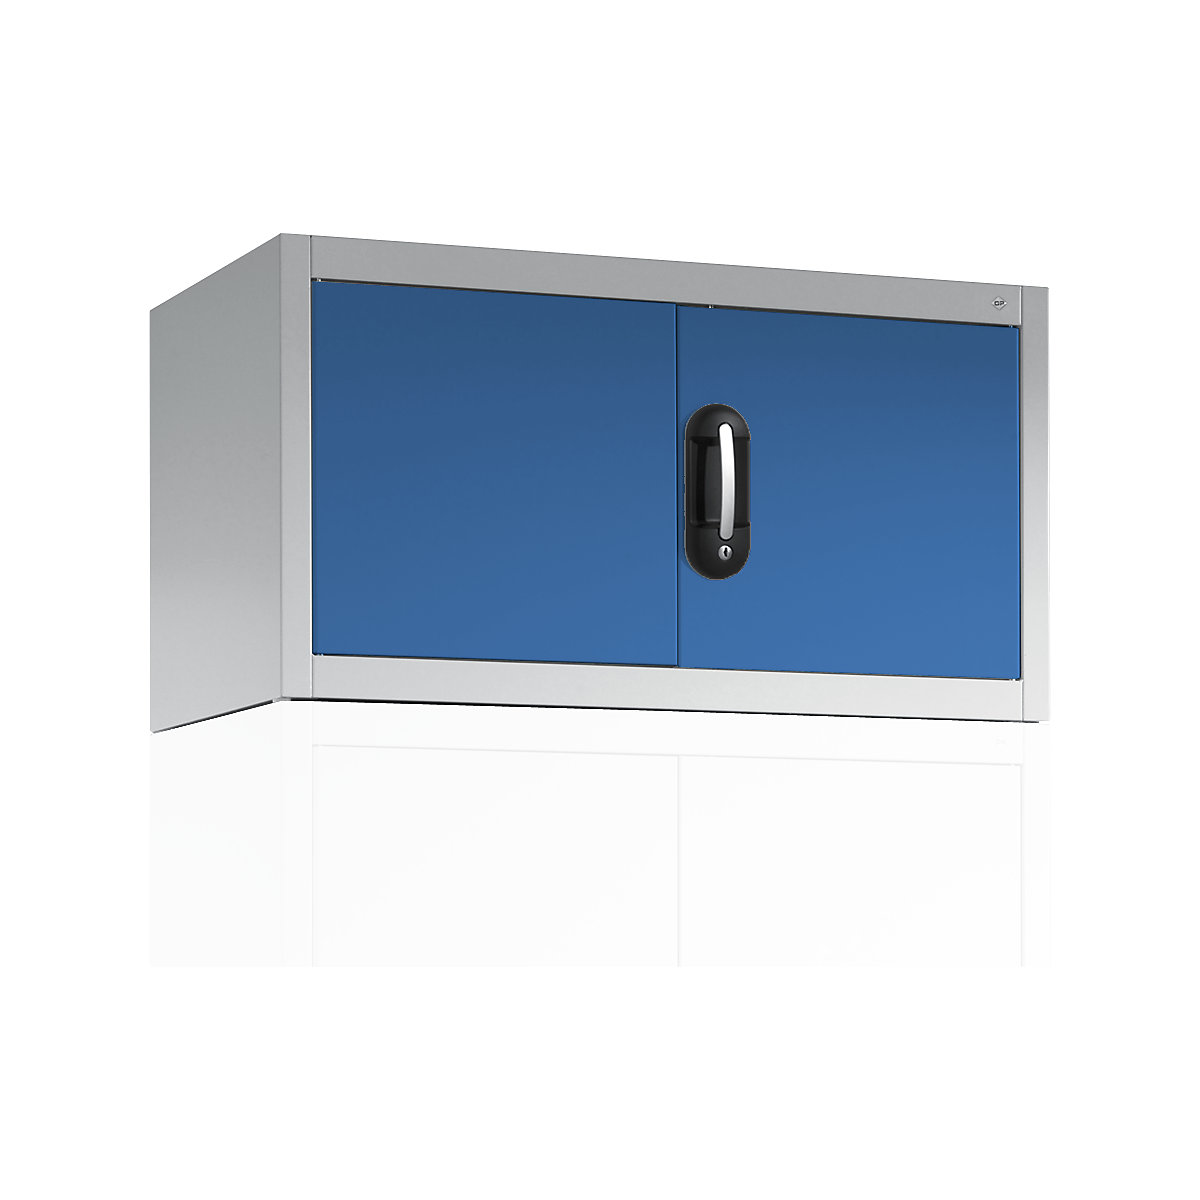 Altillo con puertas batientes ACURADO – C+P, HxAxP 500 x 930 x 400 mm, gris luminoso / azul luminoso-6